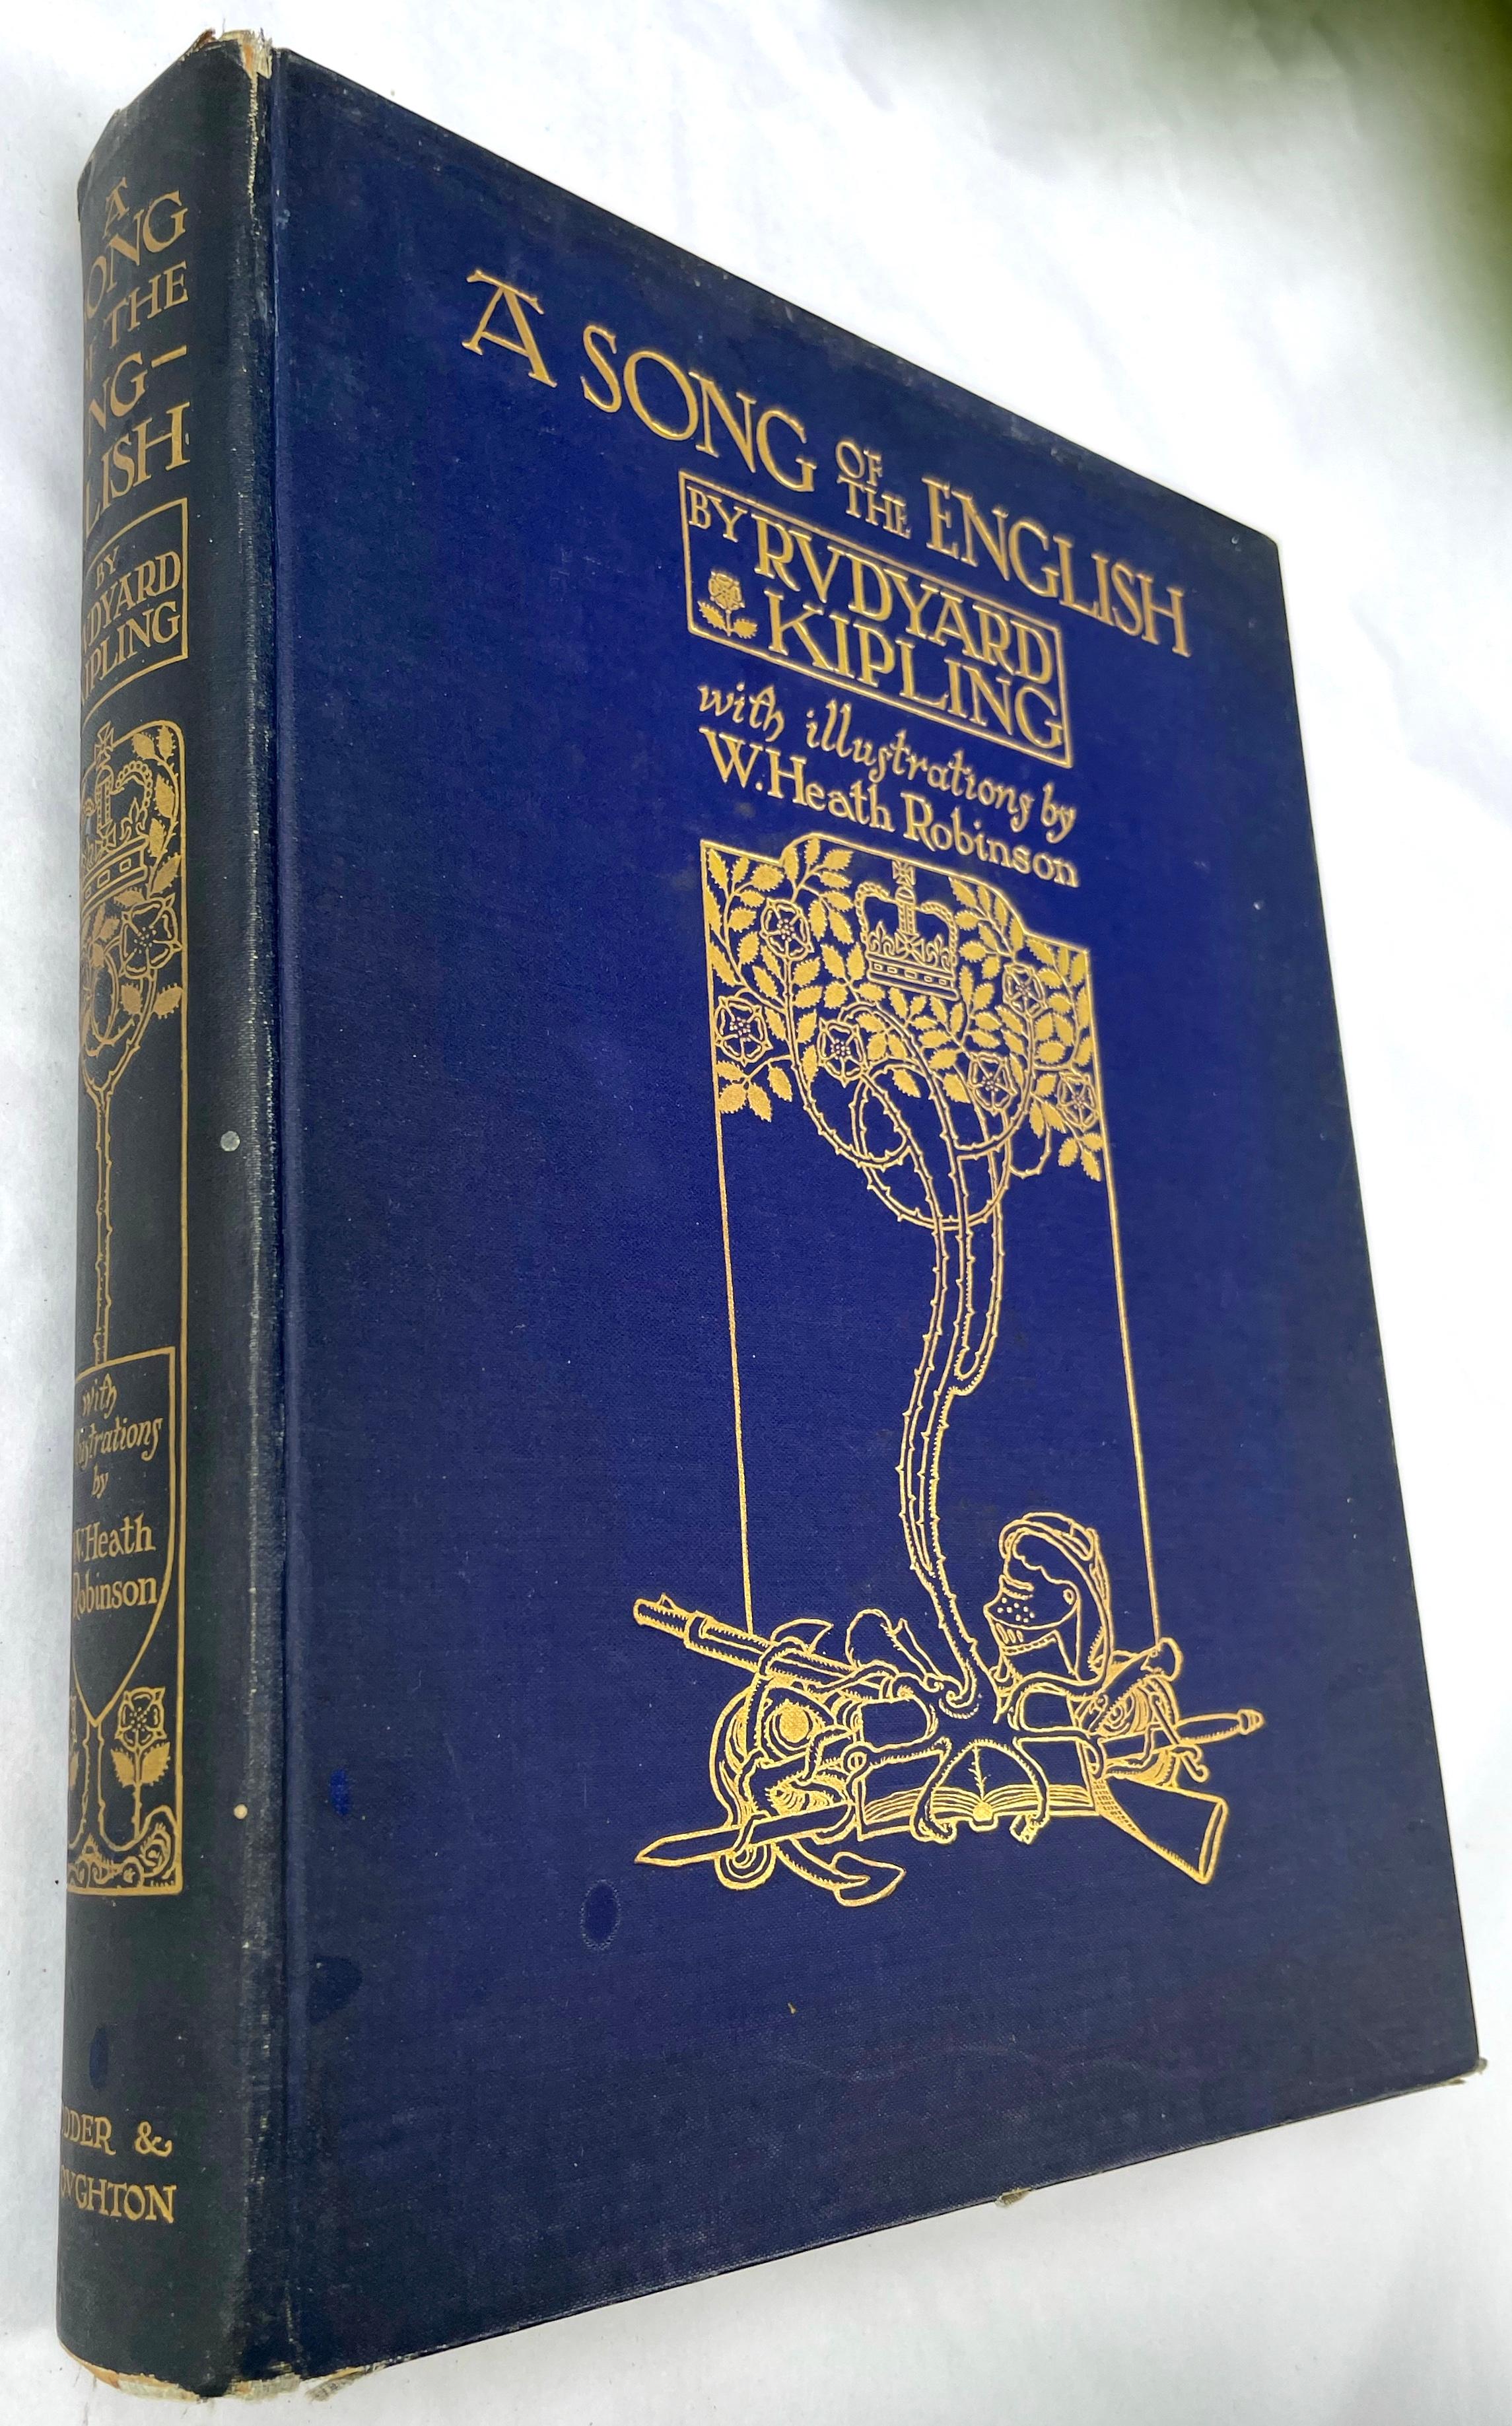 Première édition d'une chanson de The English de Rudyard Kipling. Toile bleue d'origine, avec des illustrations dorées sur le devant et le dos. Édition de l'ouvrage illustré de Robinson. Grand quarto (10 15/16 x 8 5/8 pouces). Trente planches en